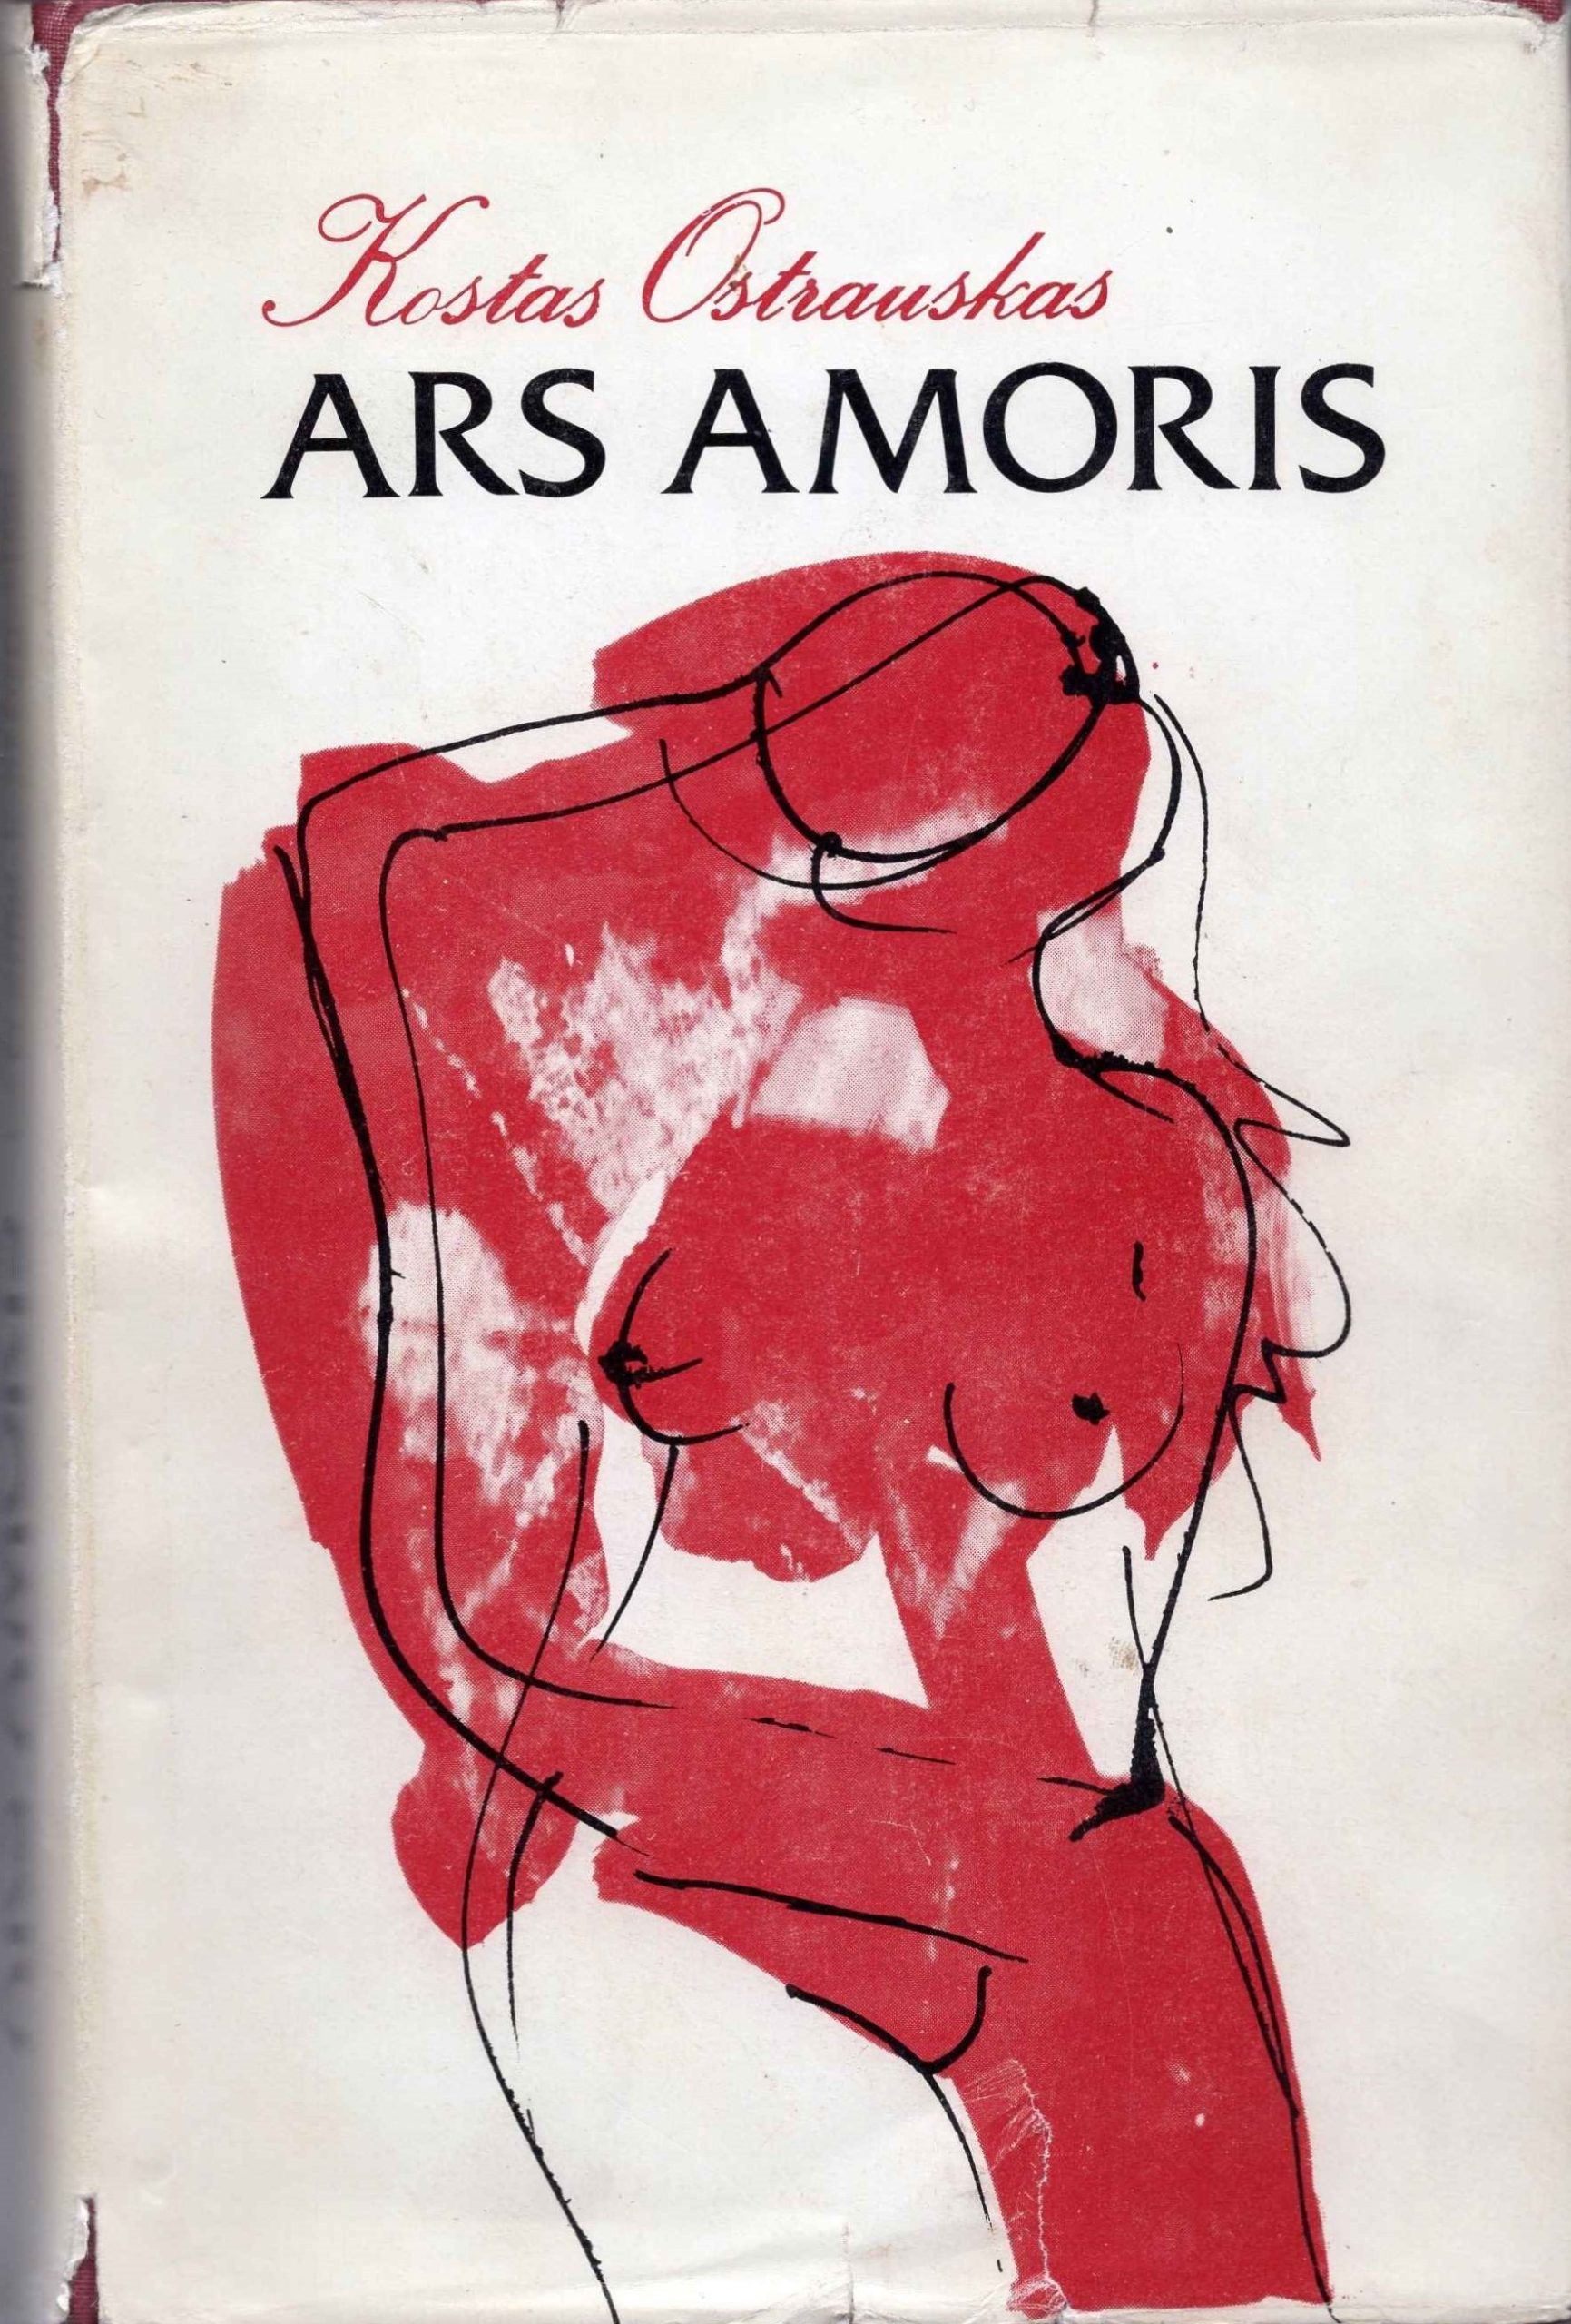 K. Ostrauskas. Filosofinė pjesė „Ars amoris“. Čikaga, 1991 m. Tekstas neįvardijamas žanro požiūriu, jame gausu garsiausių pasaulio literatūroje meilės istorijų personažų, analizuojamos meilės variacijos